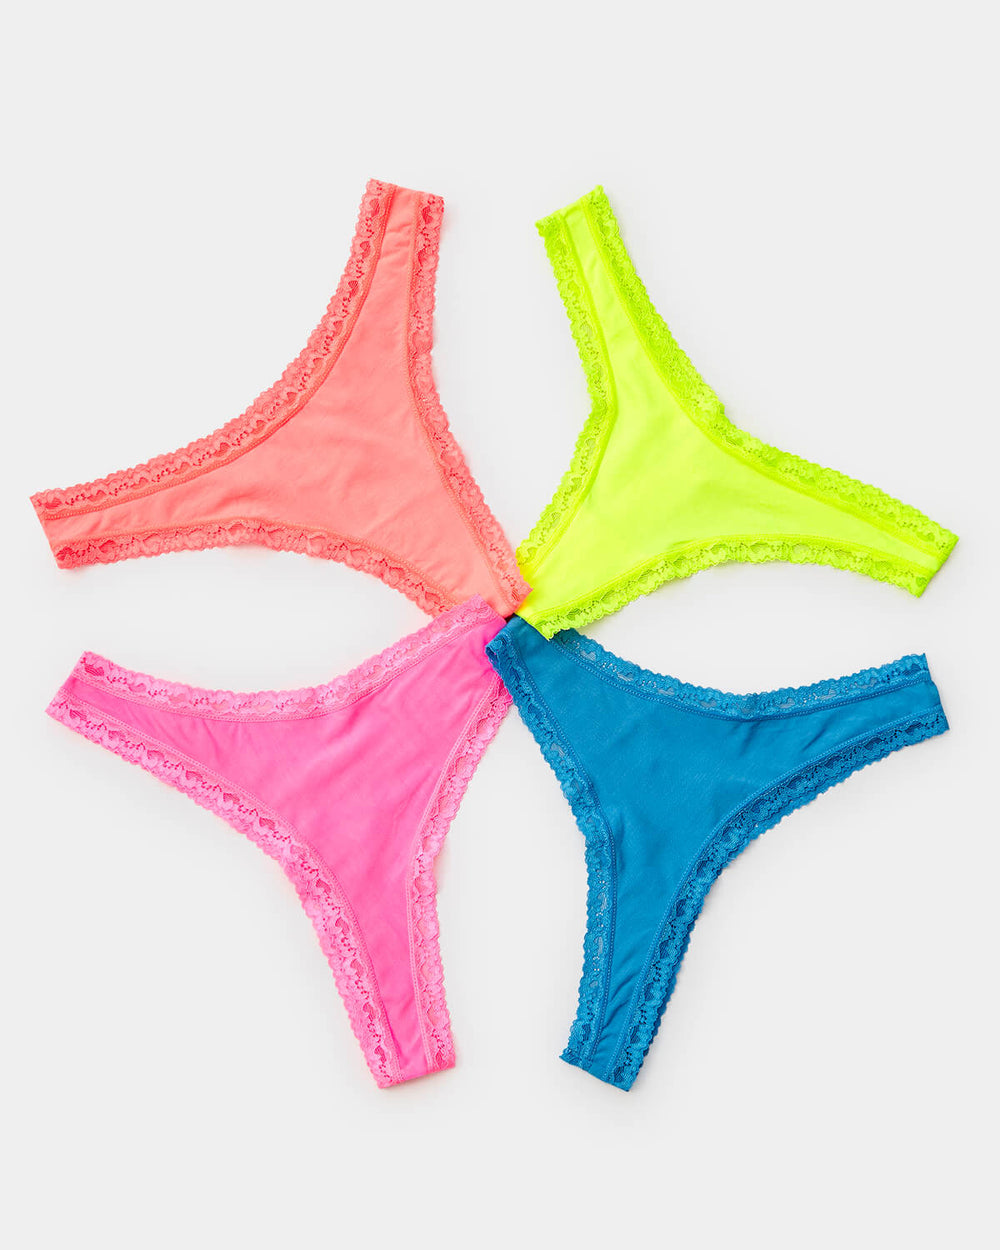 Neon Floral Lingerie 3 Piece Set Transparent Lace Underwear Women